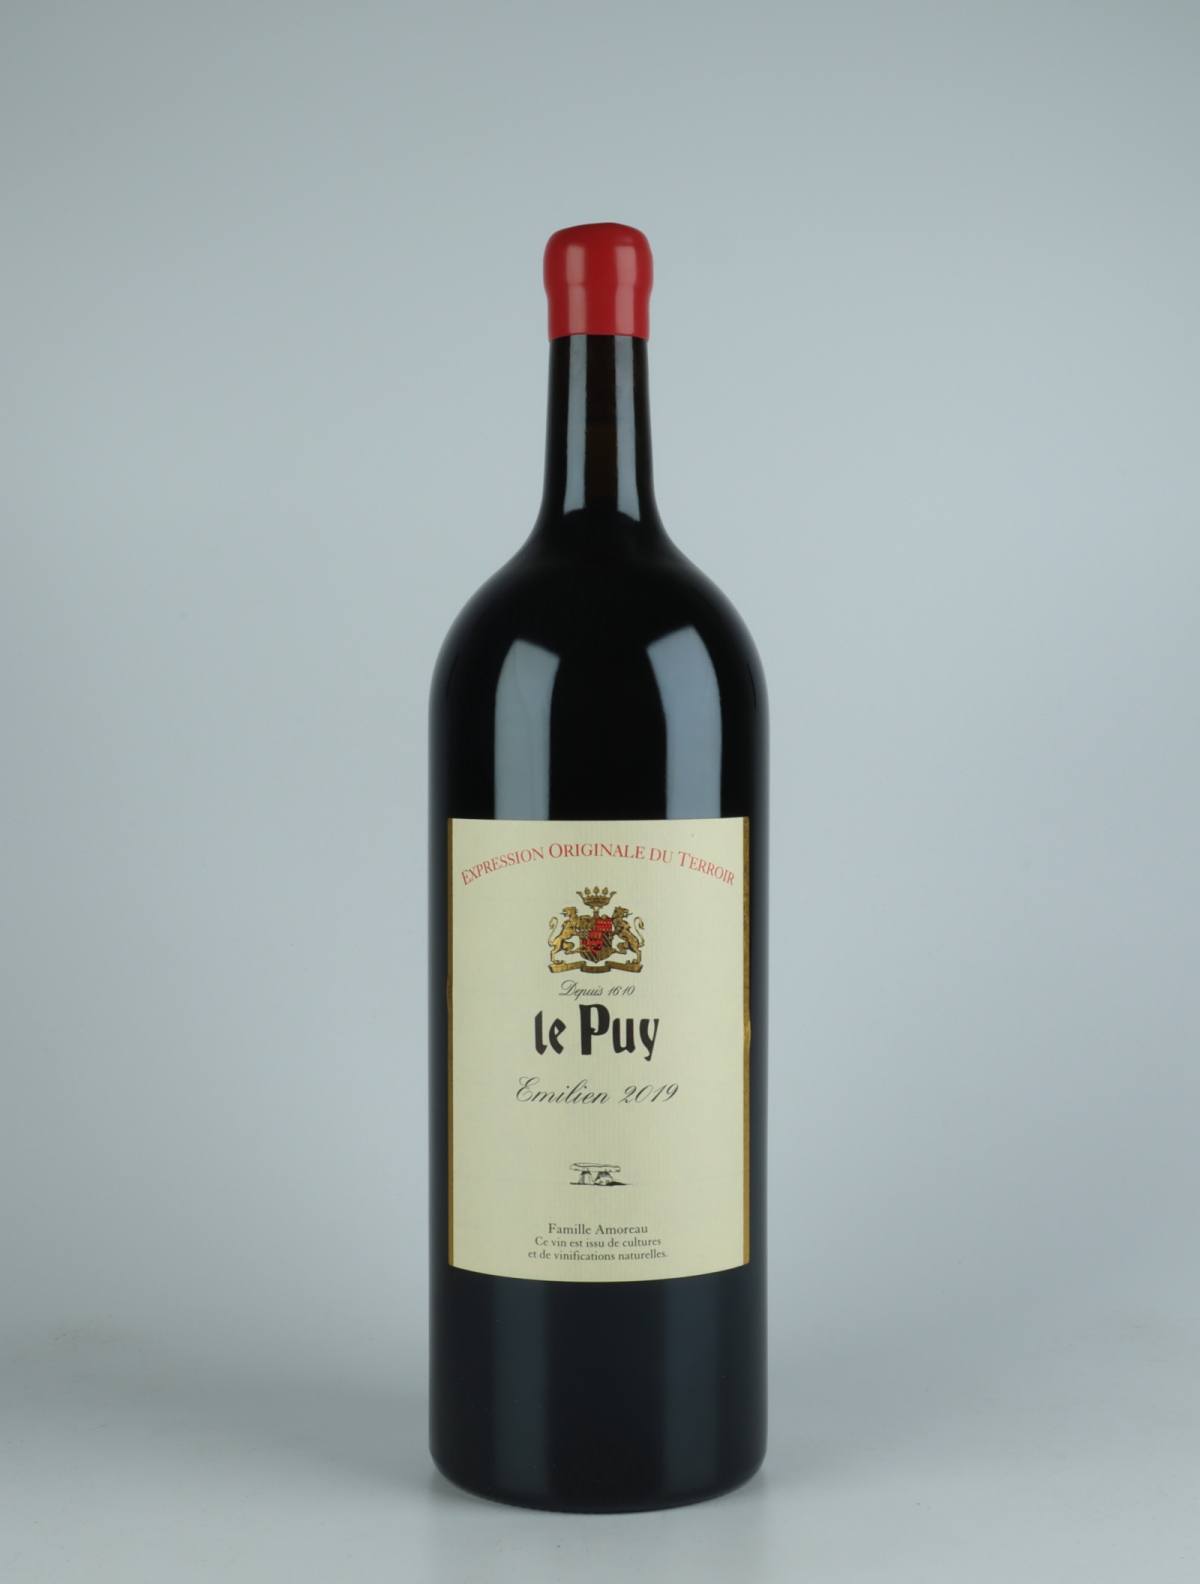 En flaske 2019 Emilien Rødvin fra Château le Puy, Bordeaux i Frankrig